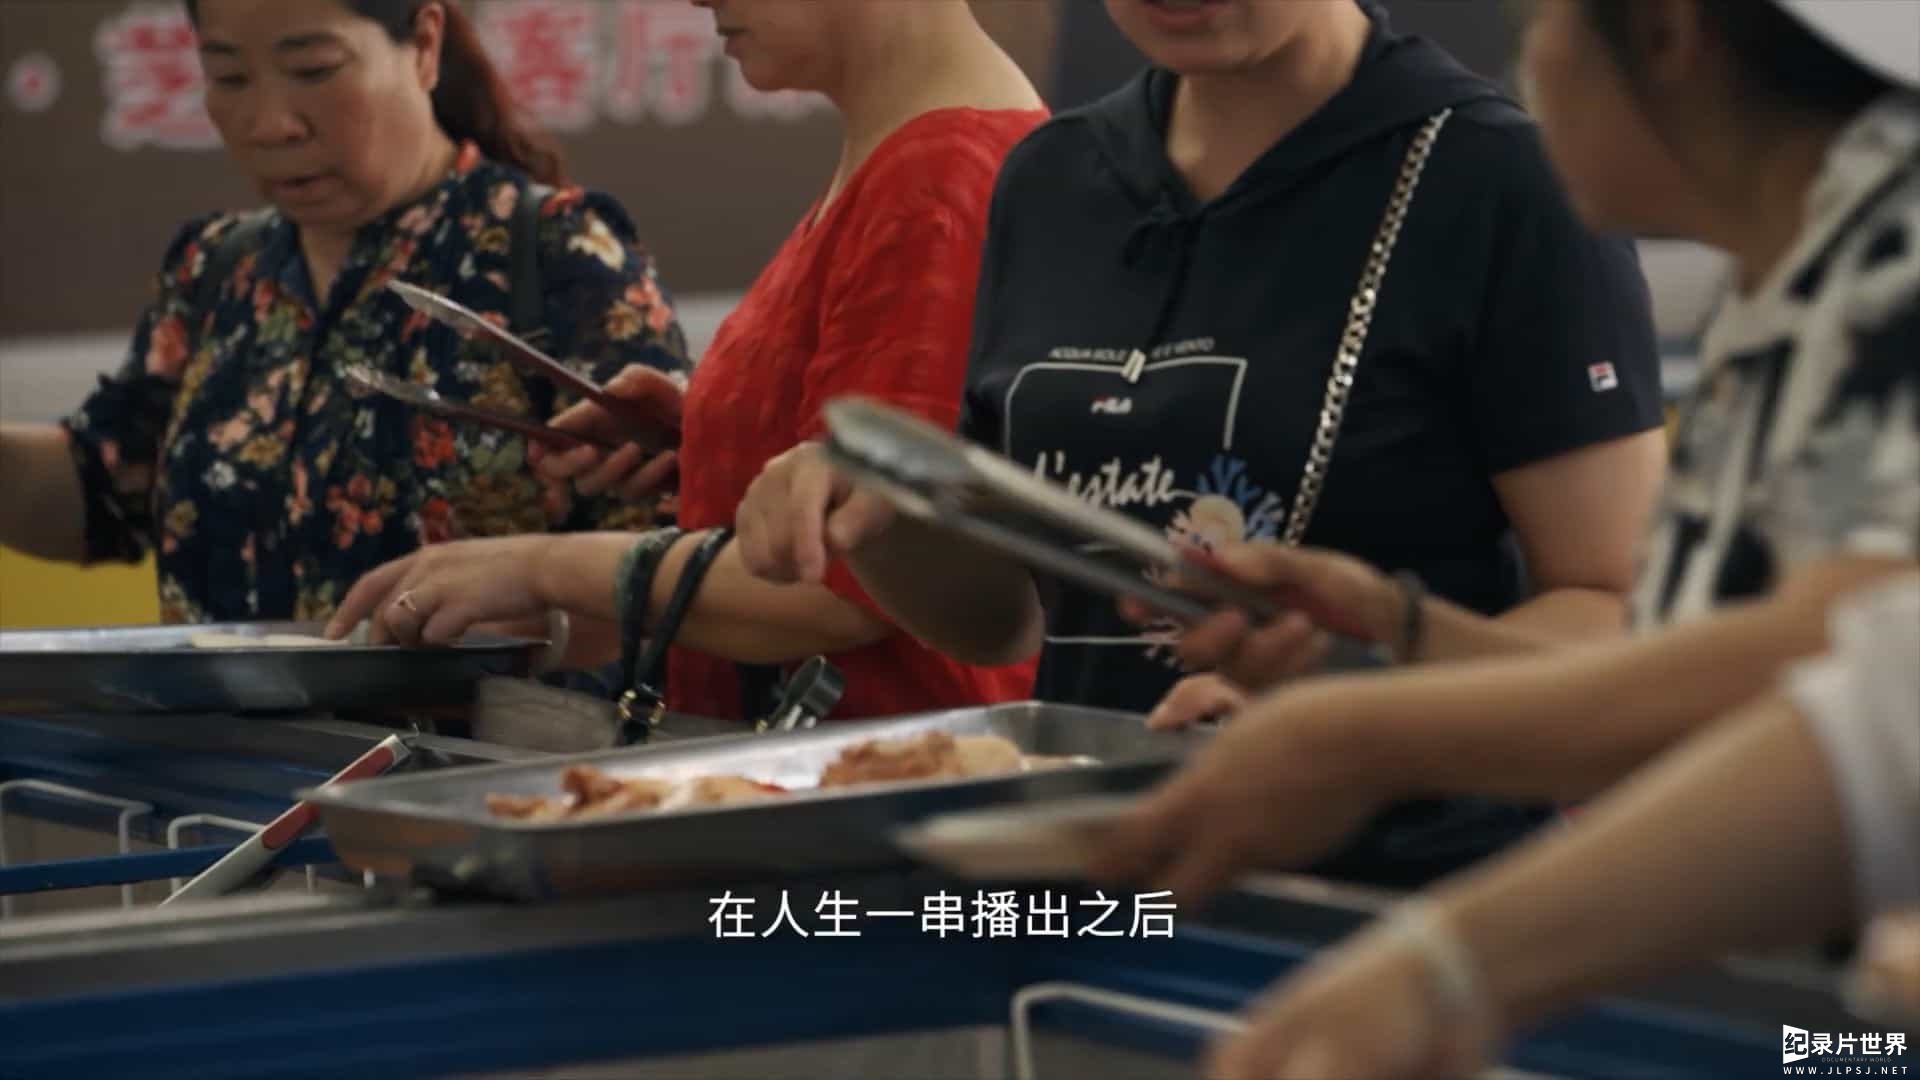 美食纪录片/中国美食系列《人生一串 The Story Of Chuaner》全3季